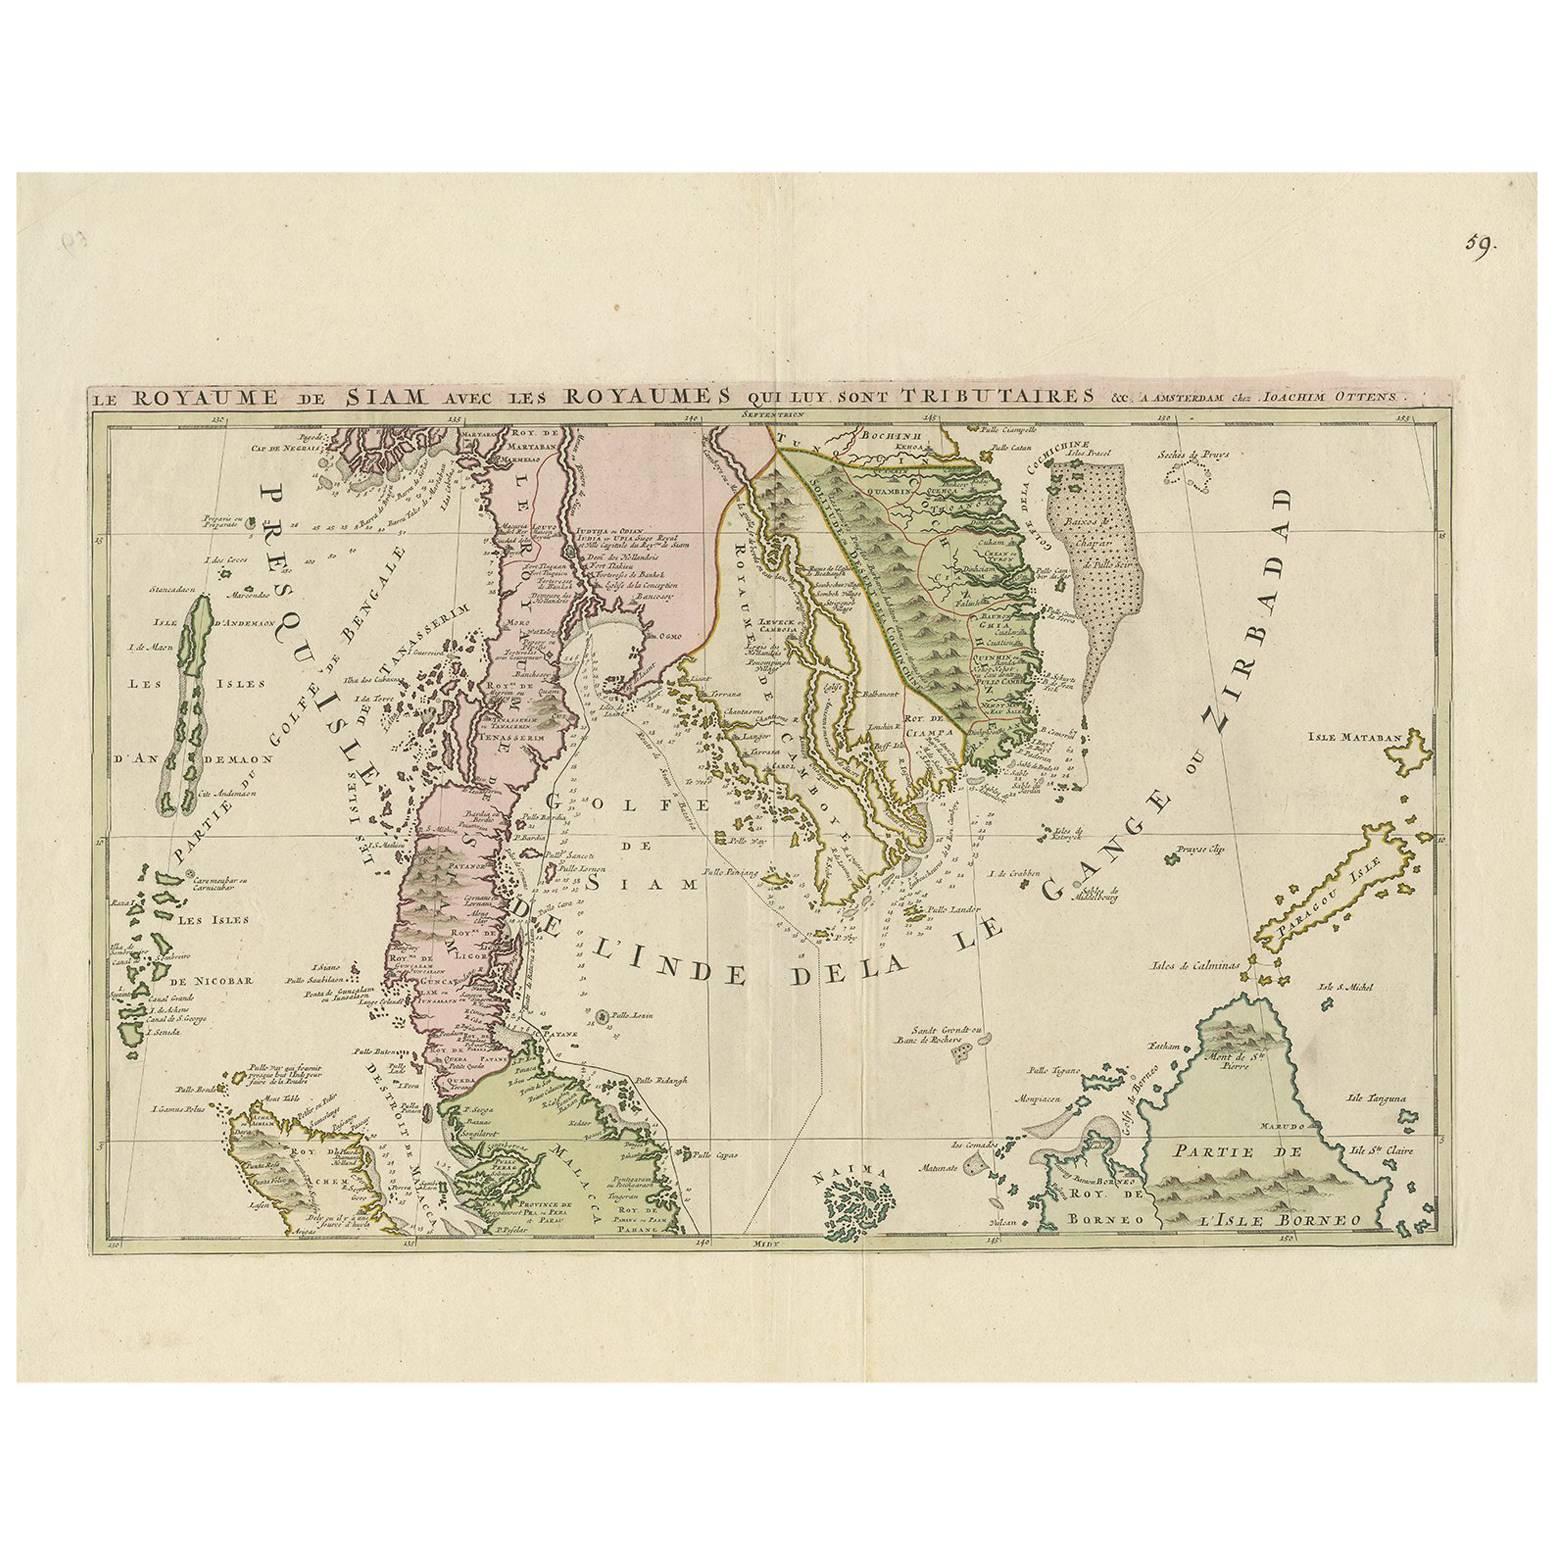 Carte ancienne d'Asie du Sud-Est par J. Ottens, 1710